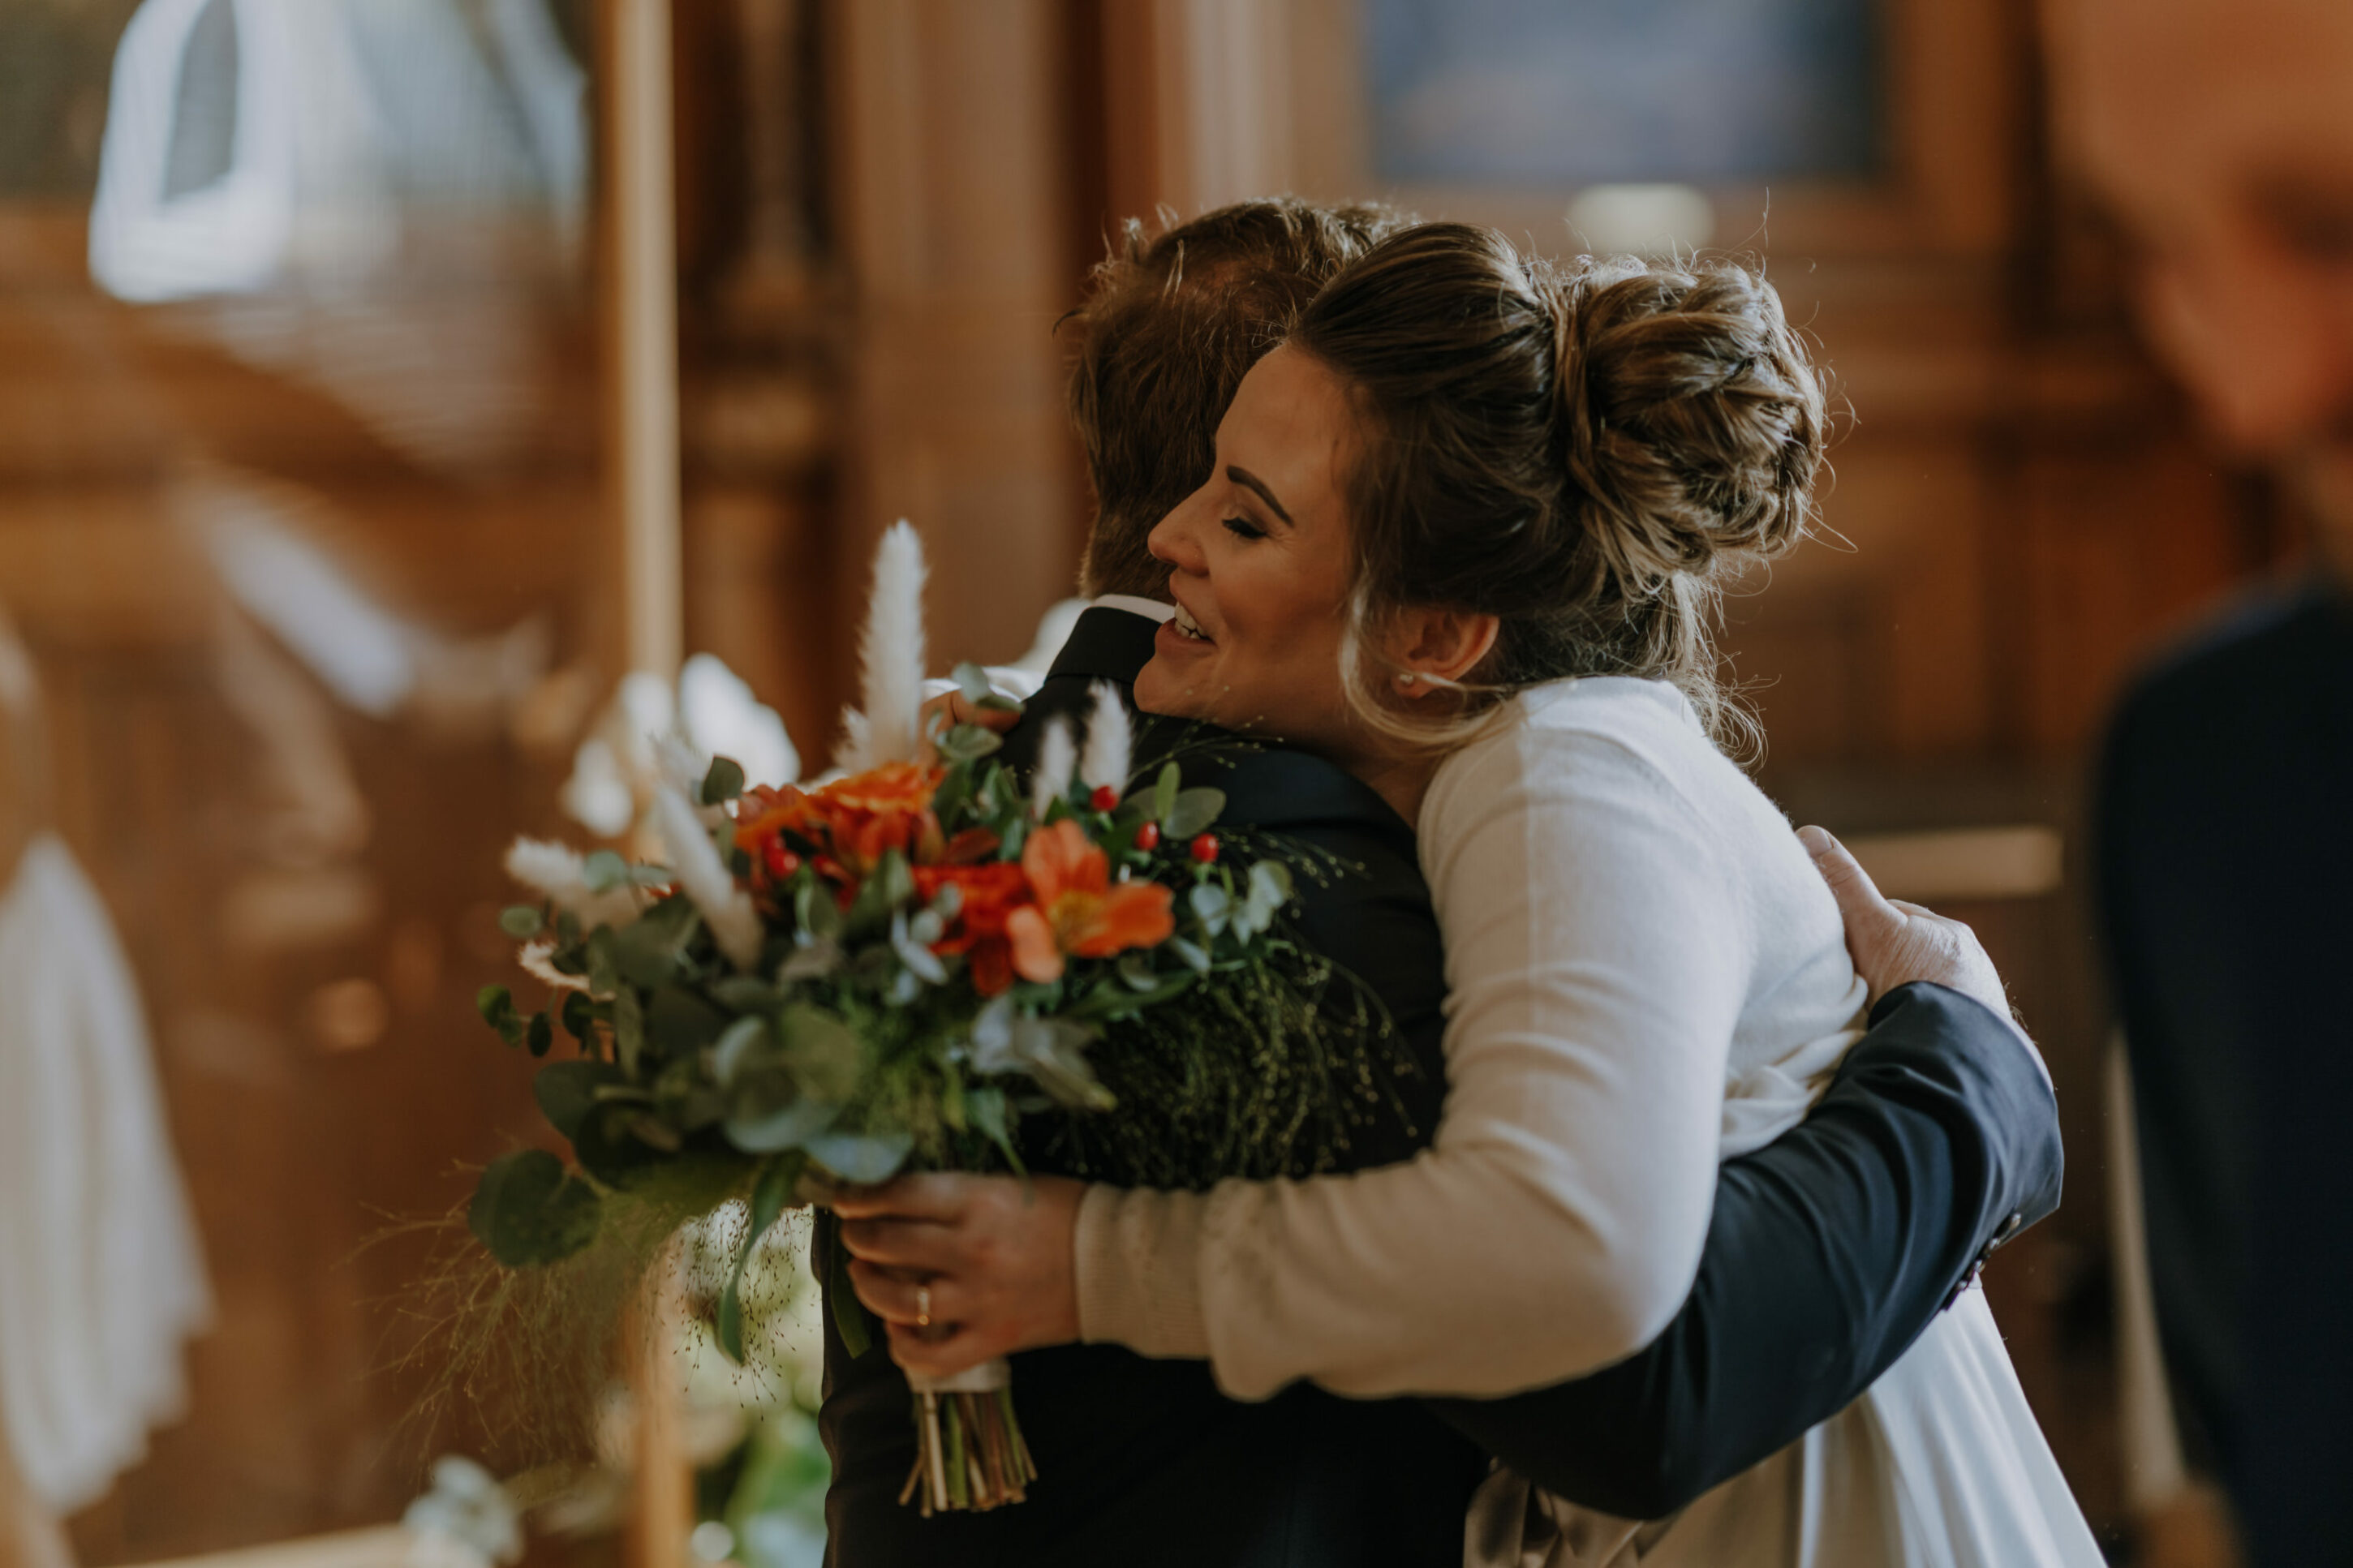 Braut empfängtglücklich Glückwünsche nach Trauung im großen Ratssaal